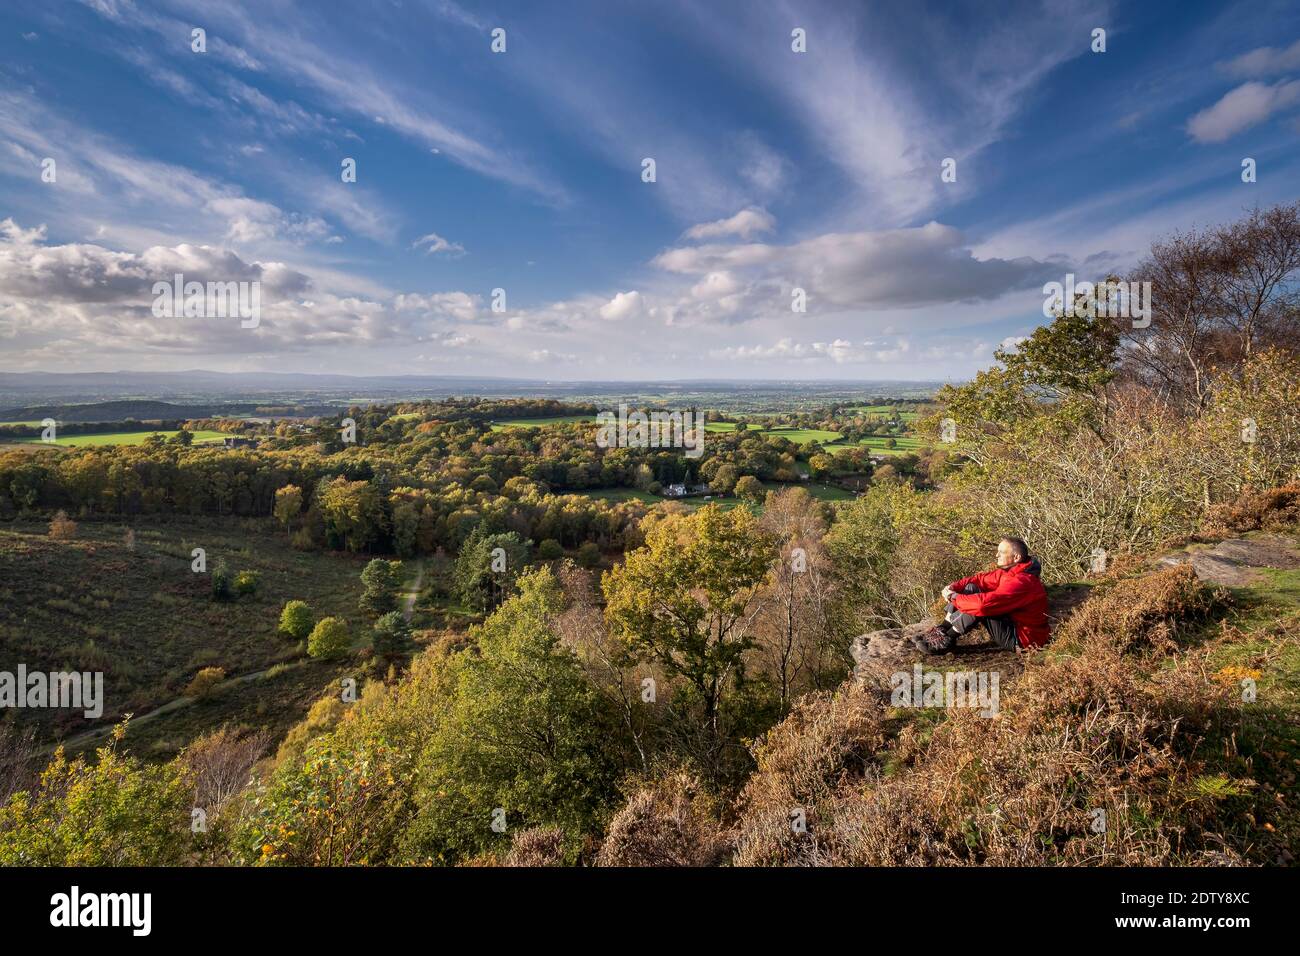 Walker en automne, vue sur la plaine du Cheshire depuis le château de Maiden, Bickerton Hill, Cheshire, Angleterre, Royaume-Uni Banque D'Images